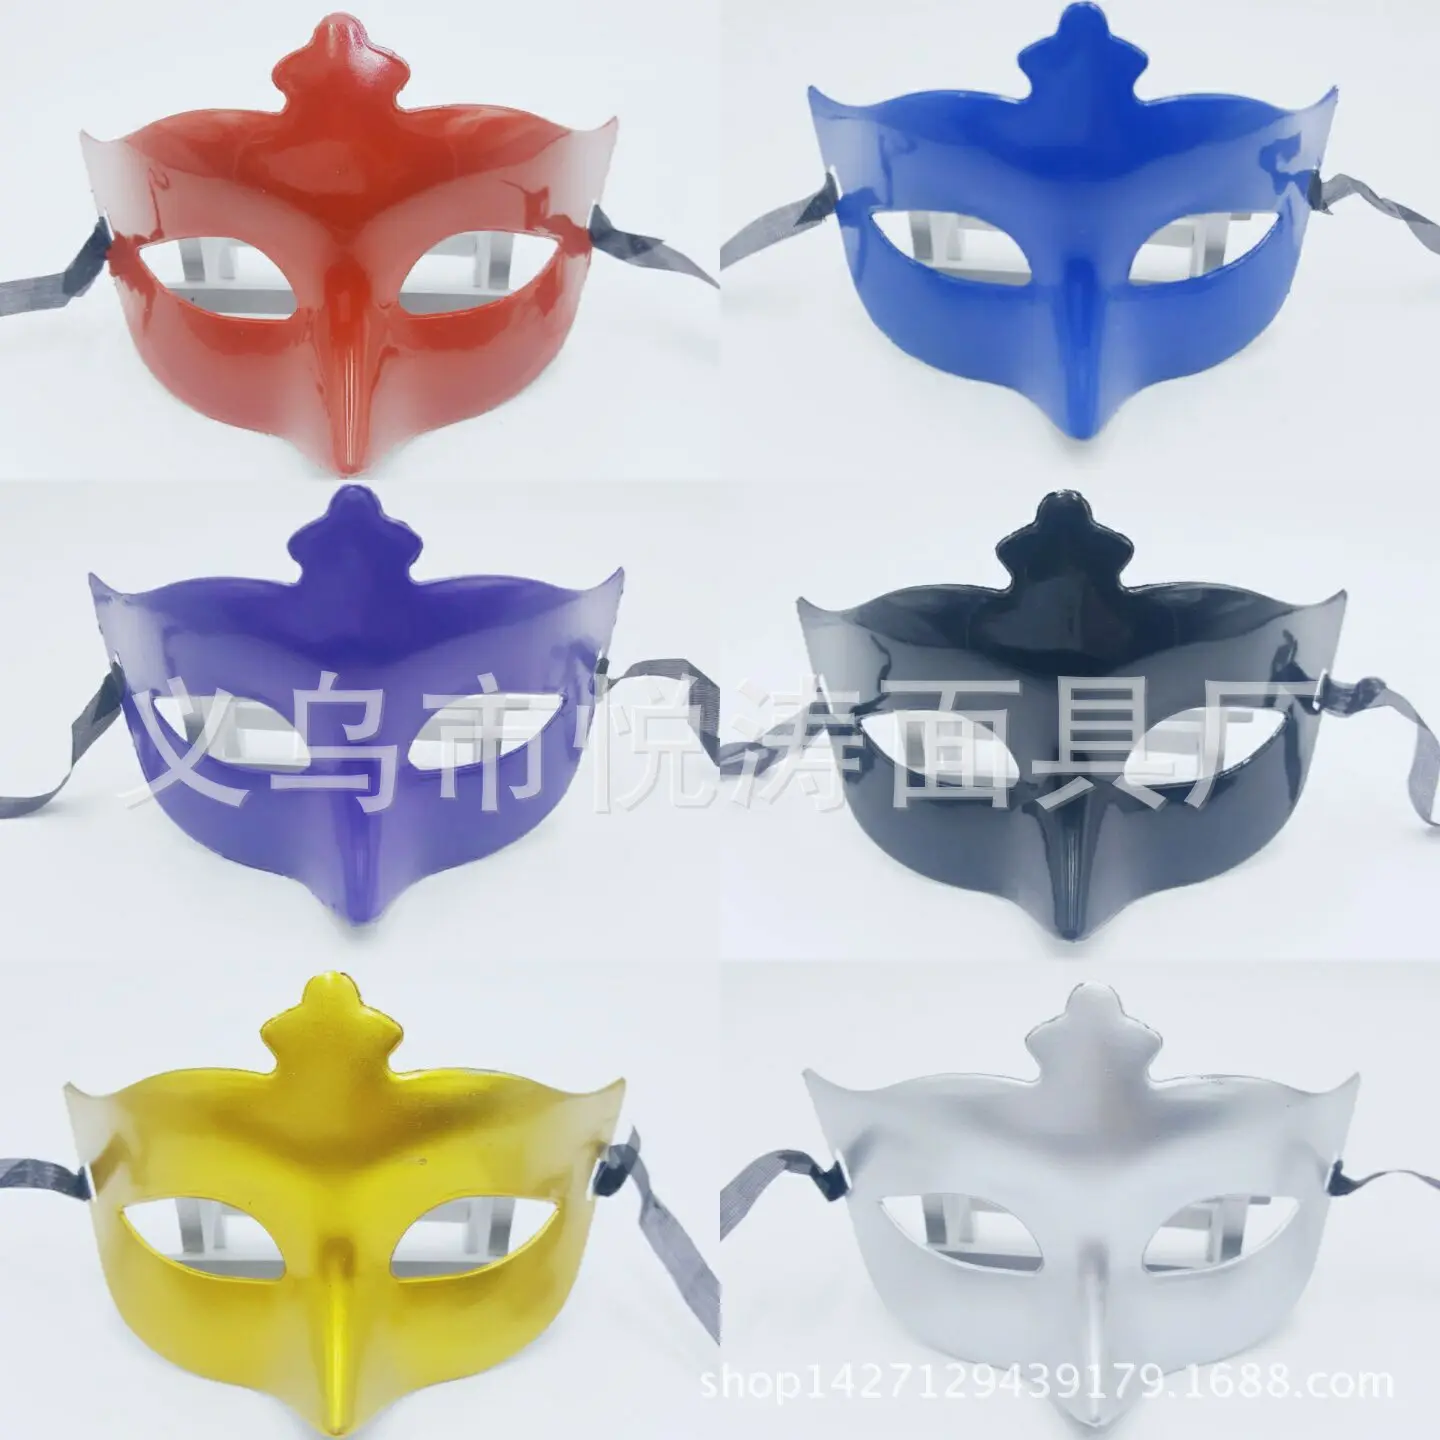 Máscara de plástico de media cara, accesorios de actuación de Venecia, juguetes para niños de dibujos animados DIY